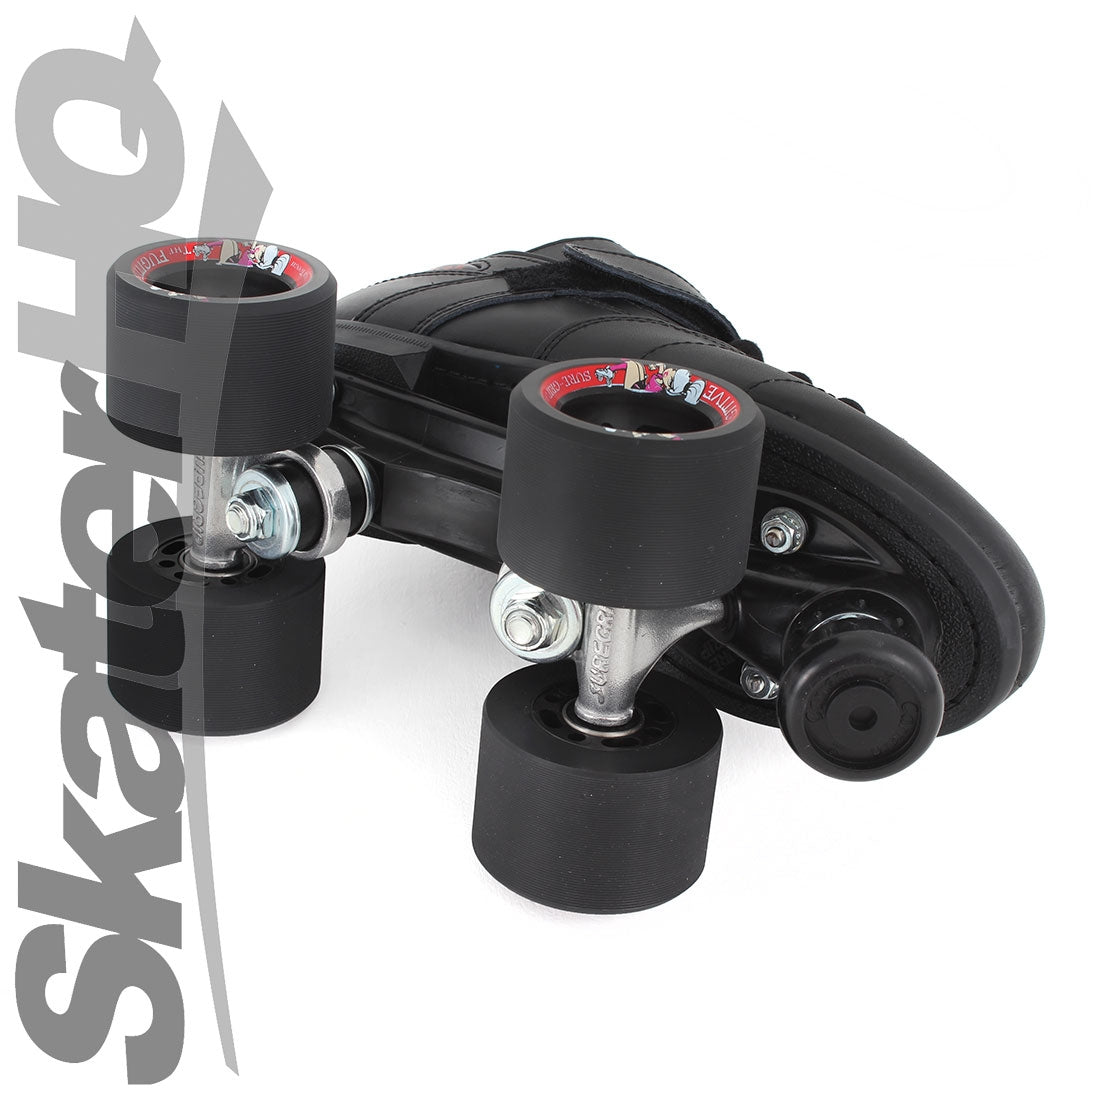 Sure-Grip Rebel Black 5US/ EU37 Roller Skates